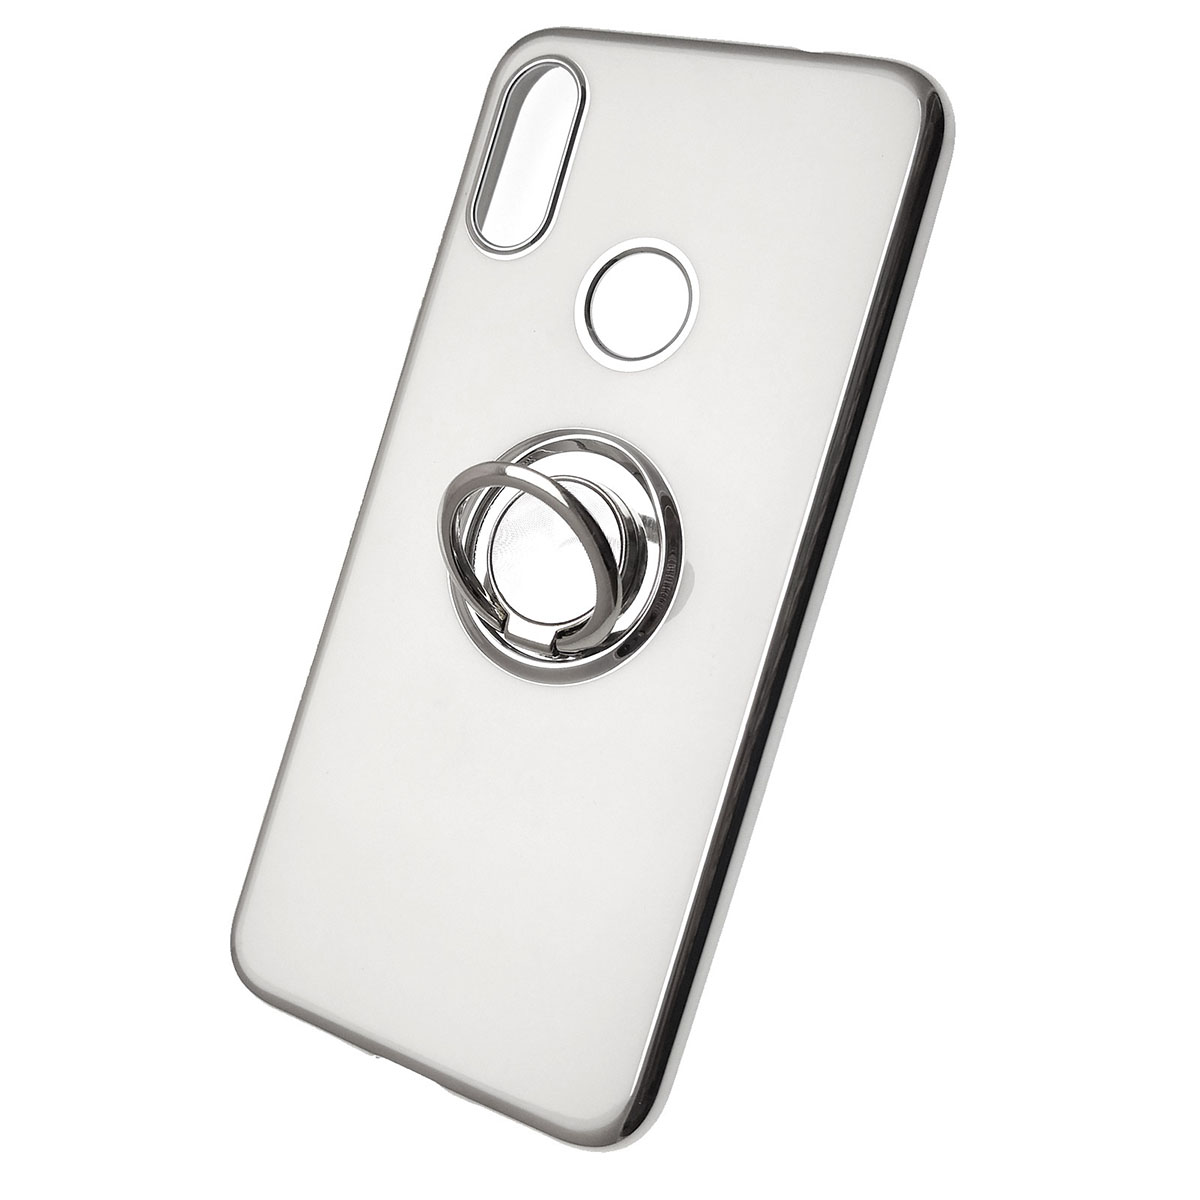 Чехол накладка для XIAOMI Redmi Note 7, Note 7 Pro, силикон, кольцо держатель, цвет белый.